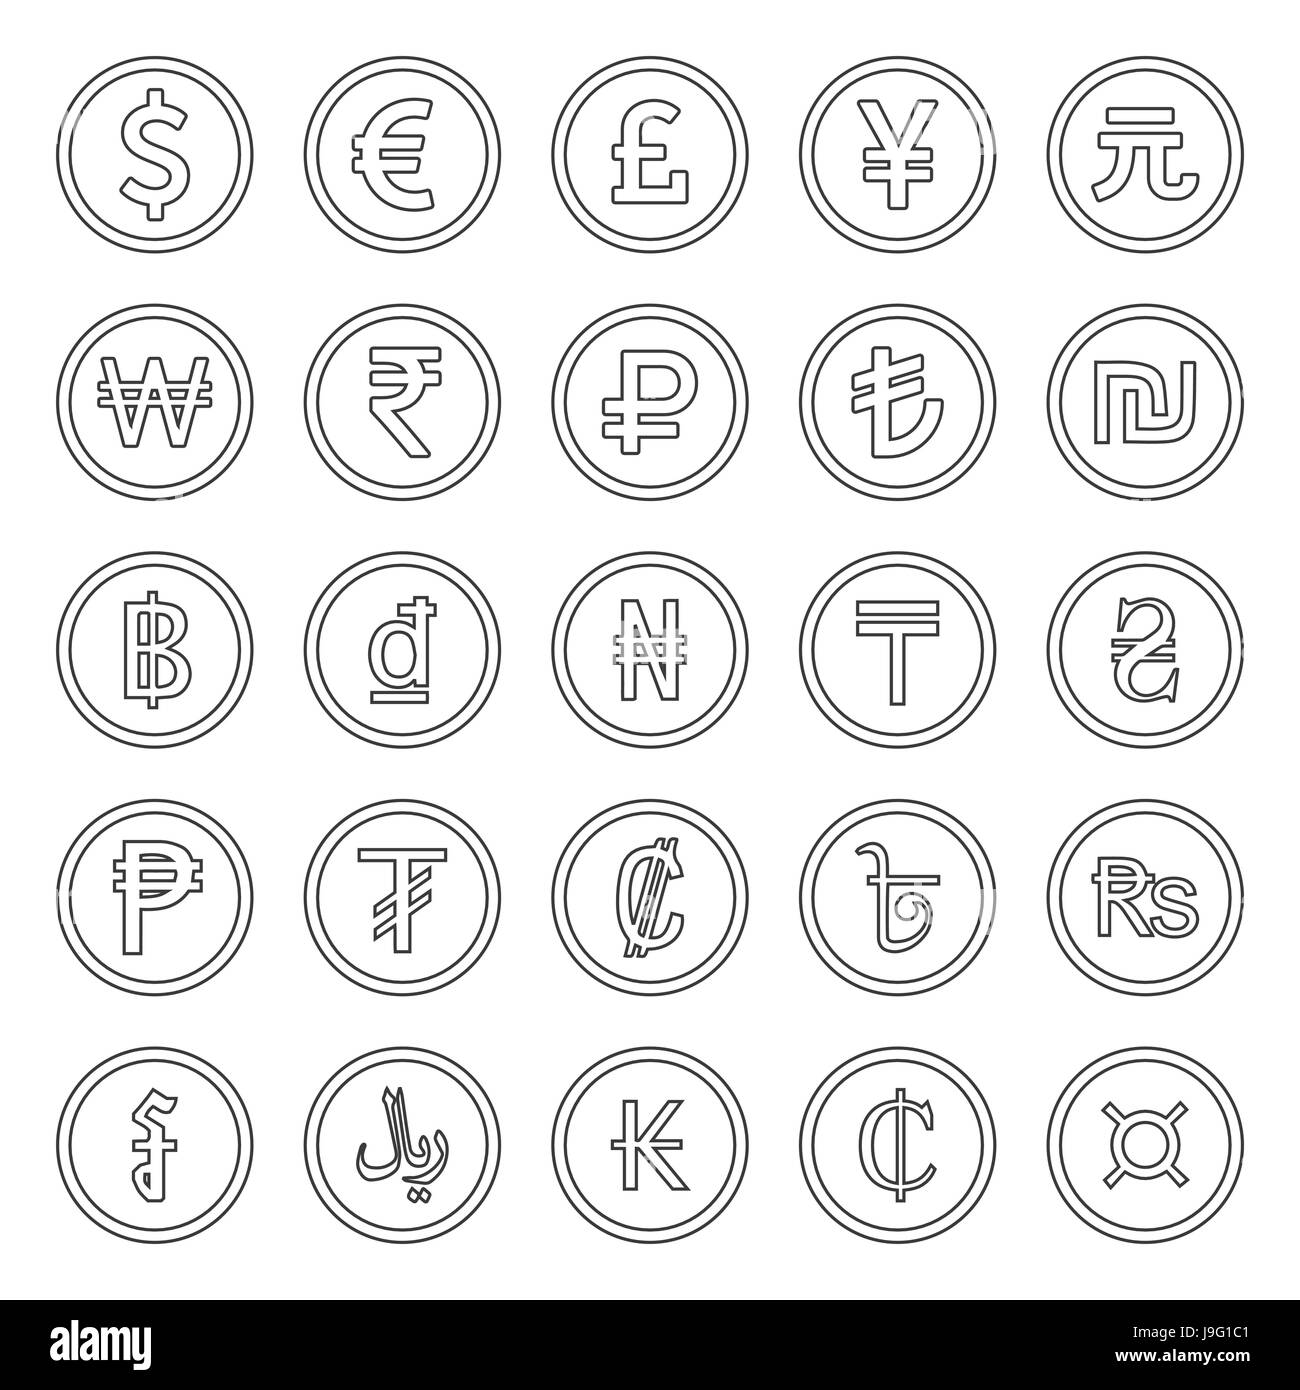 Währung Icons Set. Schwarz auf weißem Hintergrund dargestellt Stock Vektor